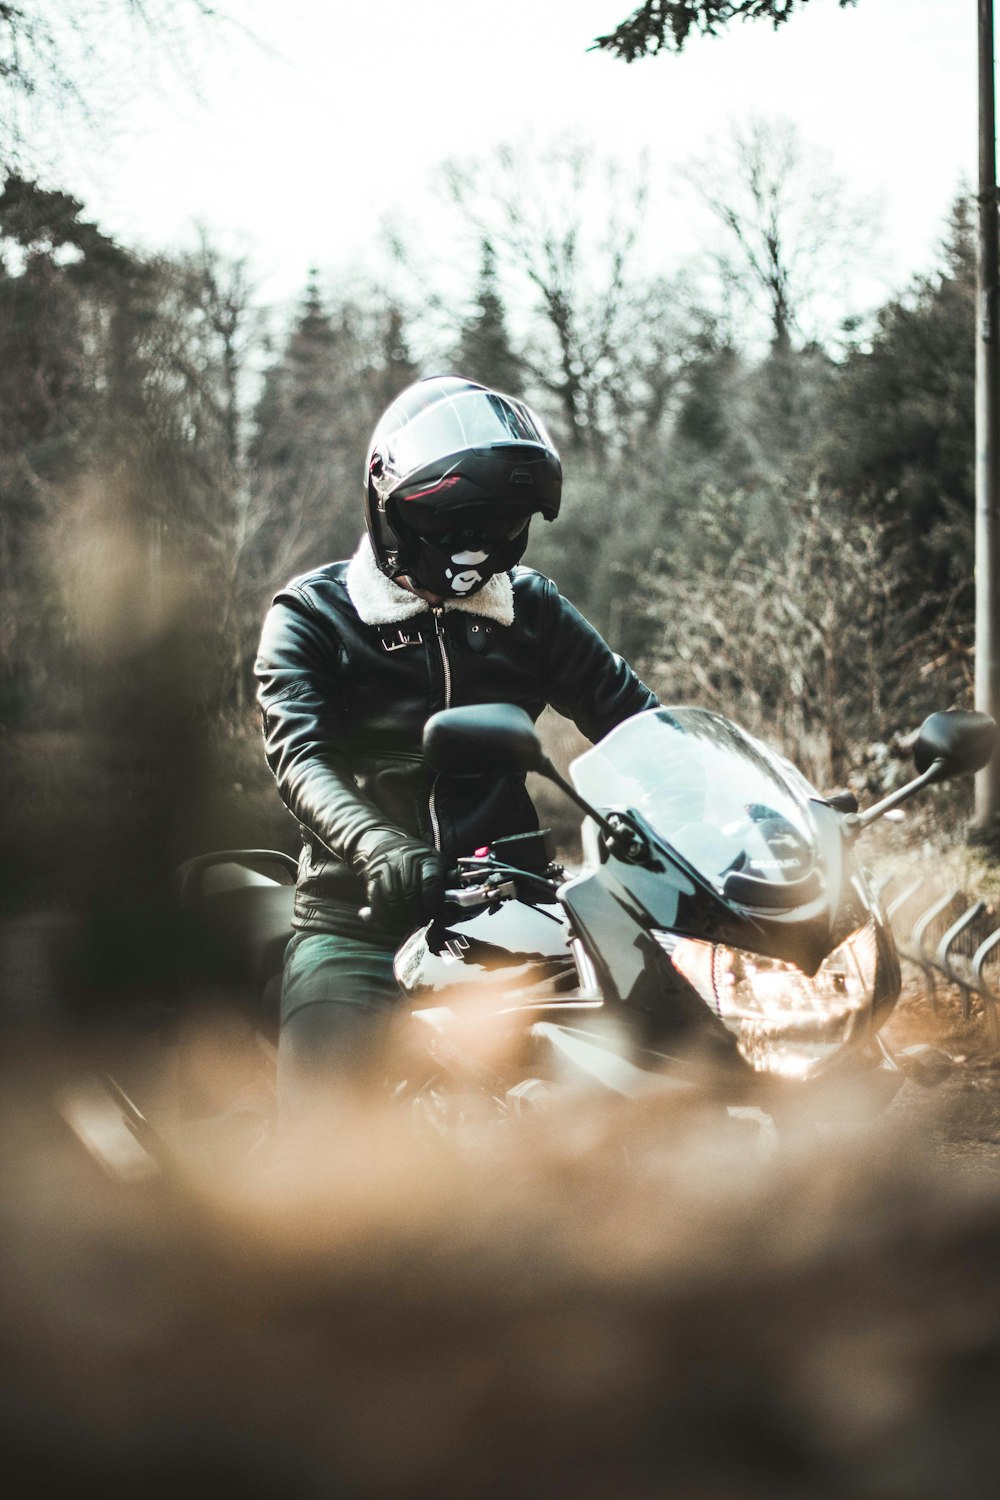 Bilder zum Thema Motorrad Spiegel  Kostenlose Bilder auf Unsplash